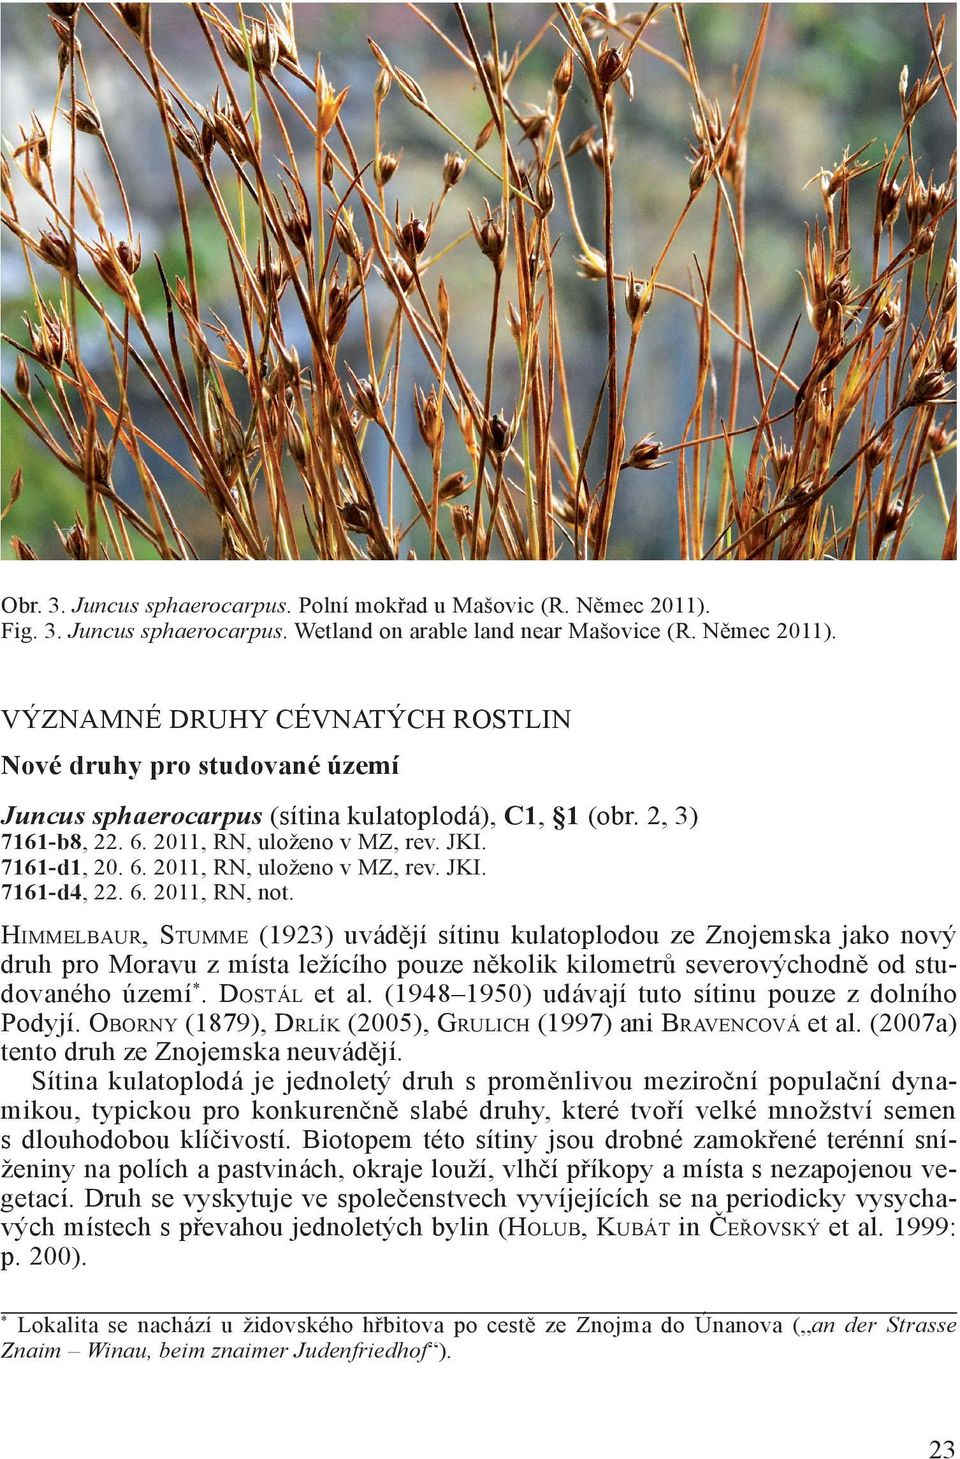 Himmelbaur, Stumme (1923) uvádějí sítinu kulatoplodou ze Znojemska jako nový druh pro Moravu z místa ležícího pouze několik kilometrů severovýchodně od studovaného území*. Dostál et al.